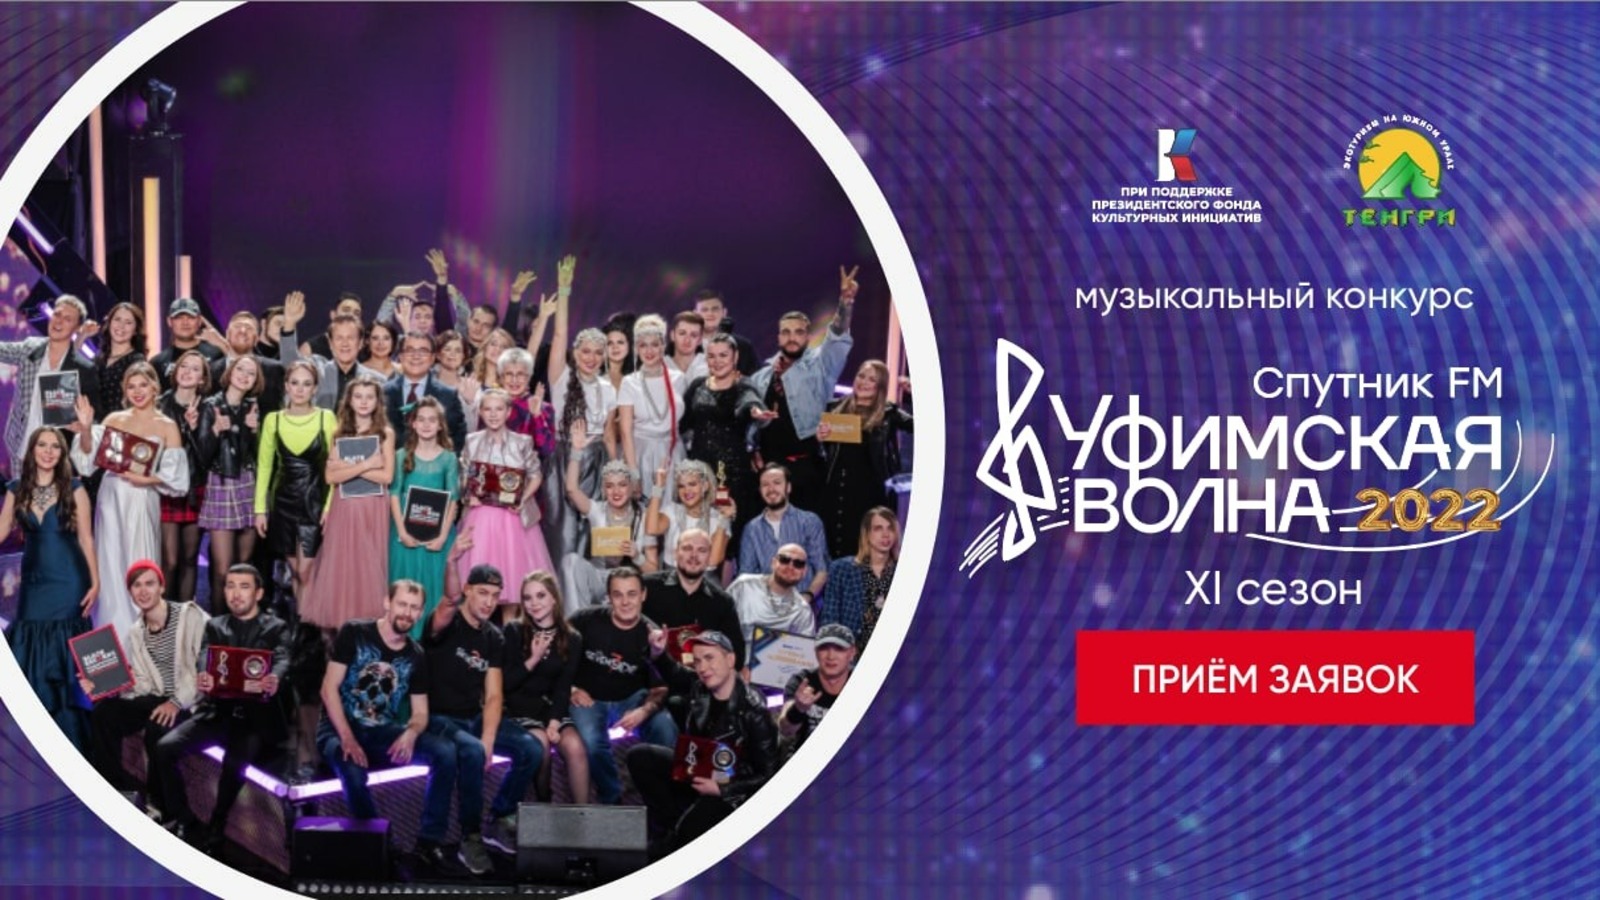 Выиграй в музыкальном конкурсе "Уфимская волна-2022" и  получи денежный приз!